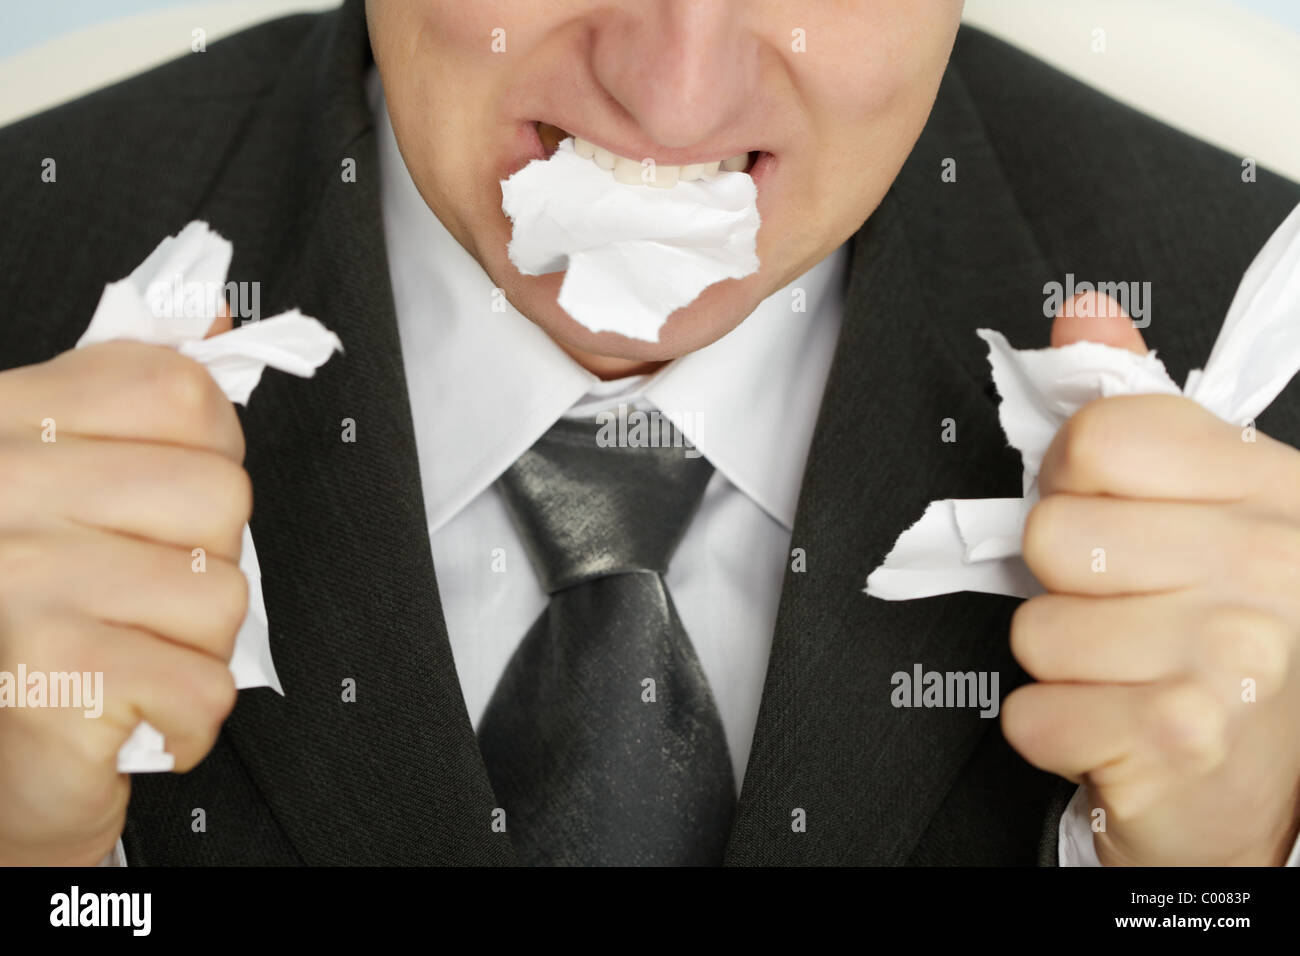 Жую бумагу почему. Ест бумагу. Съел бумагу. Человек ест бумагу. Мужик ест бумагу.